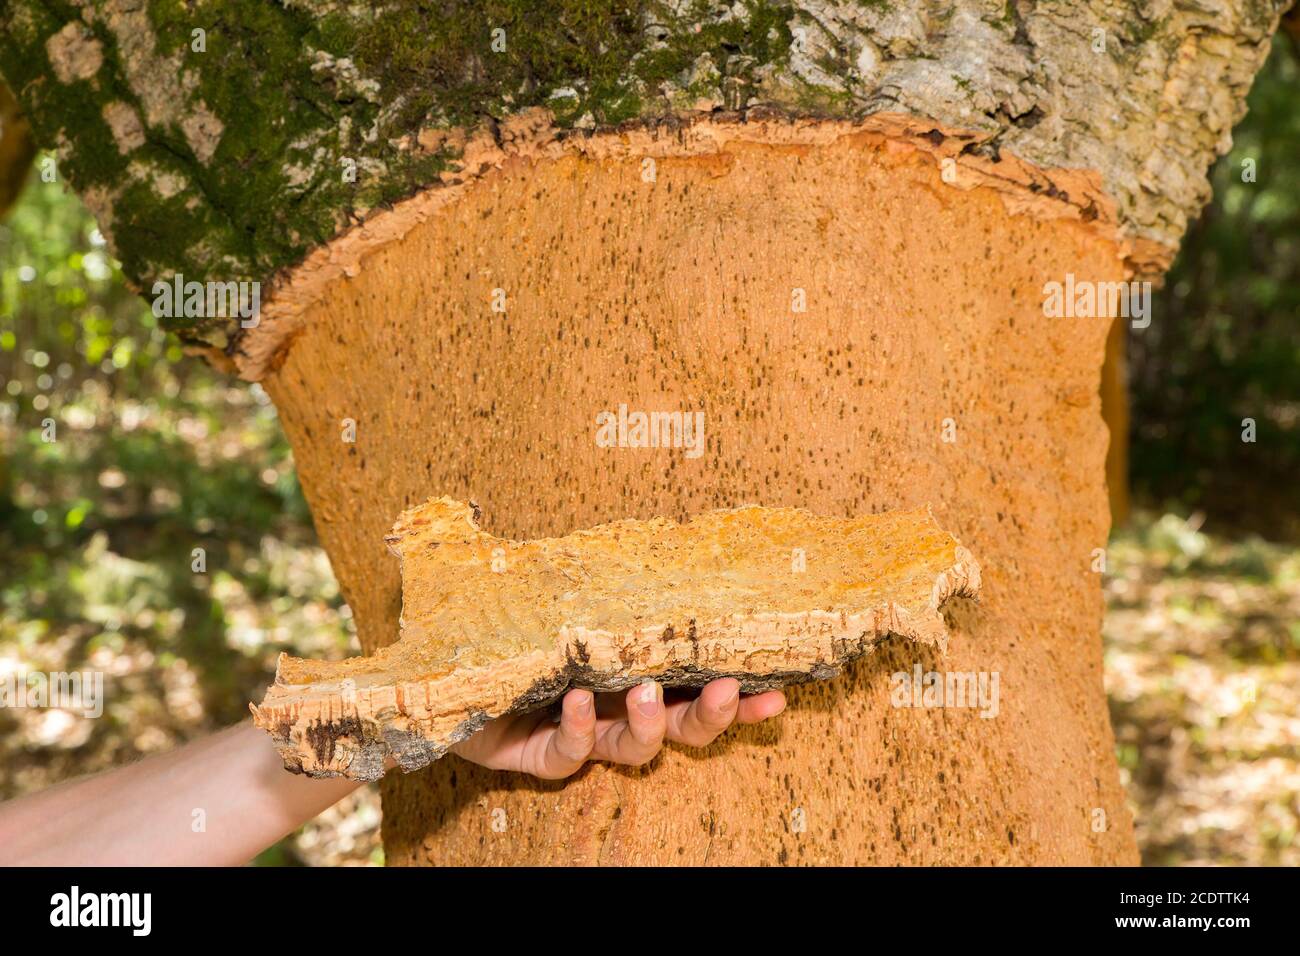 Hand holding Cork tree bark at tree trunk Stock Photo